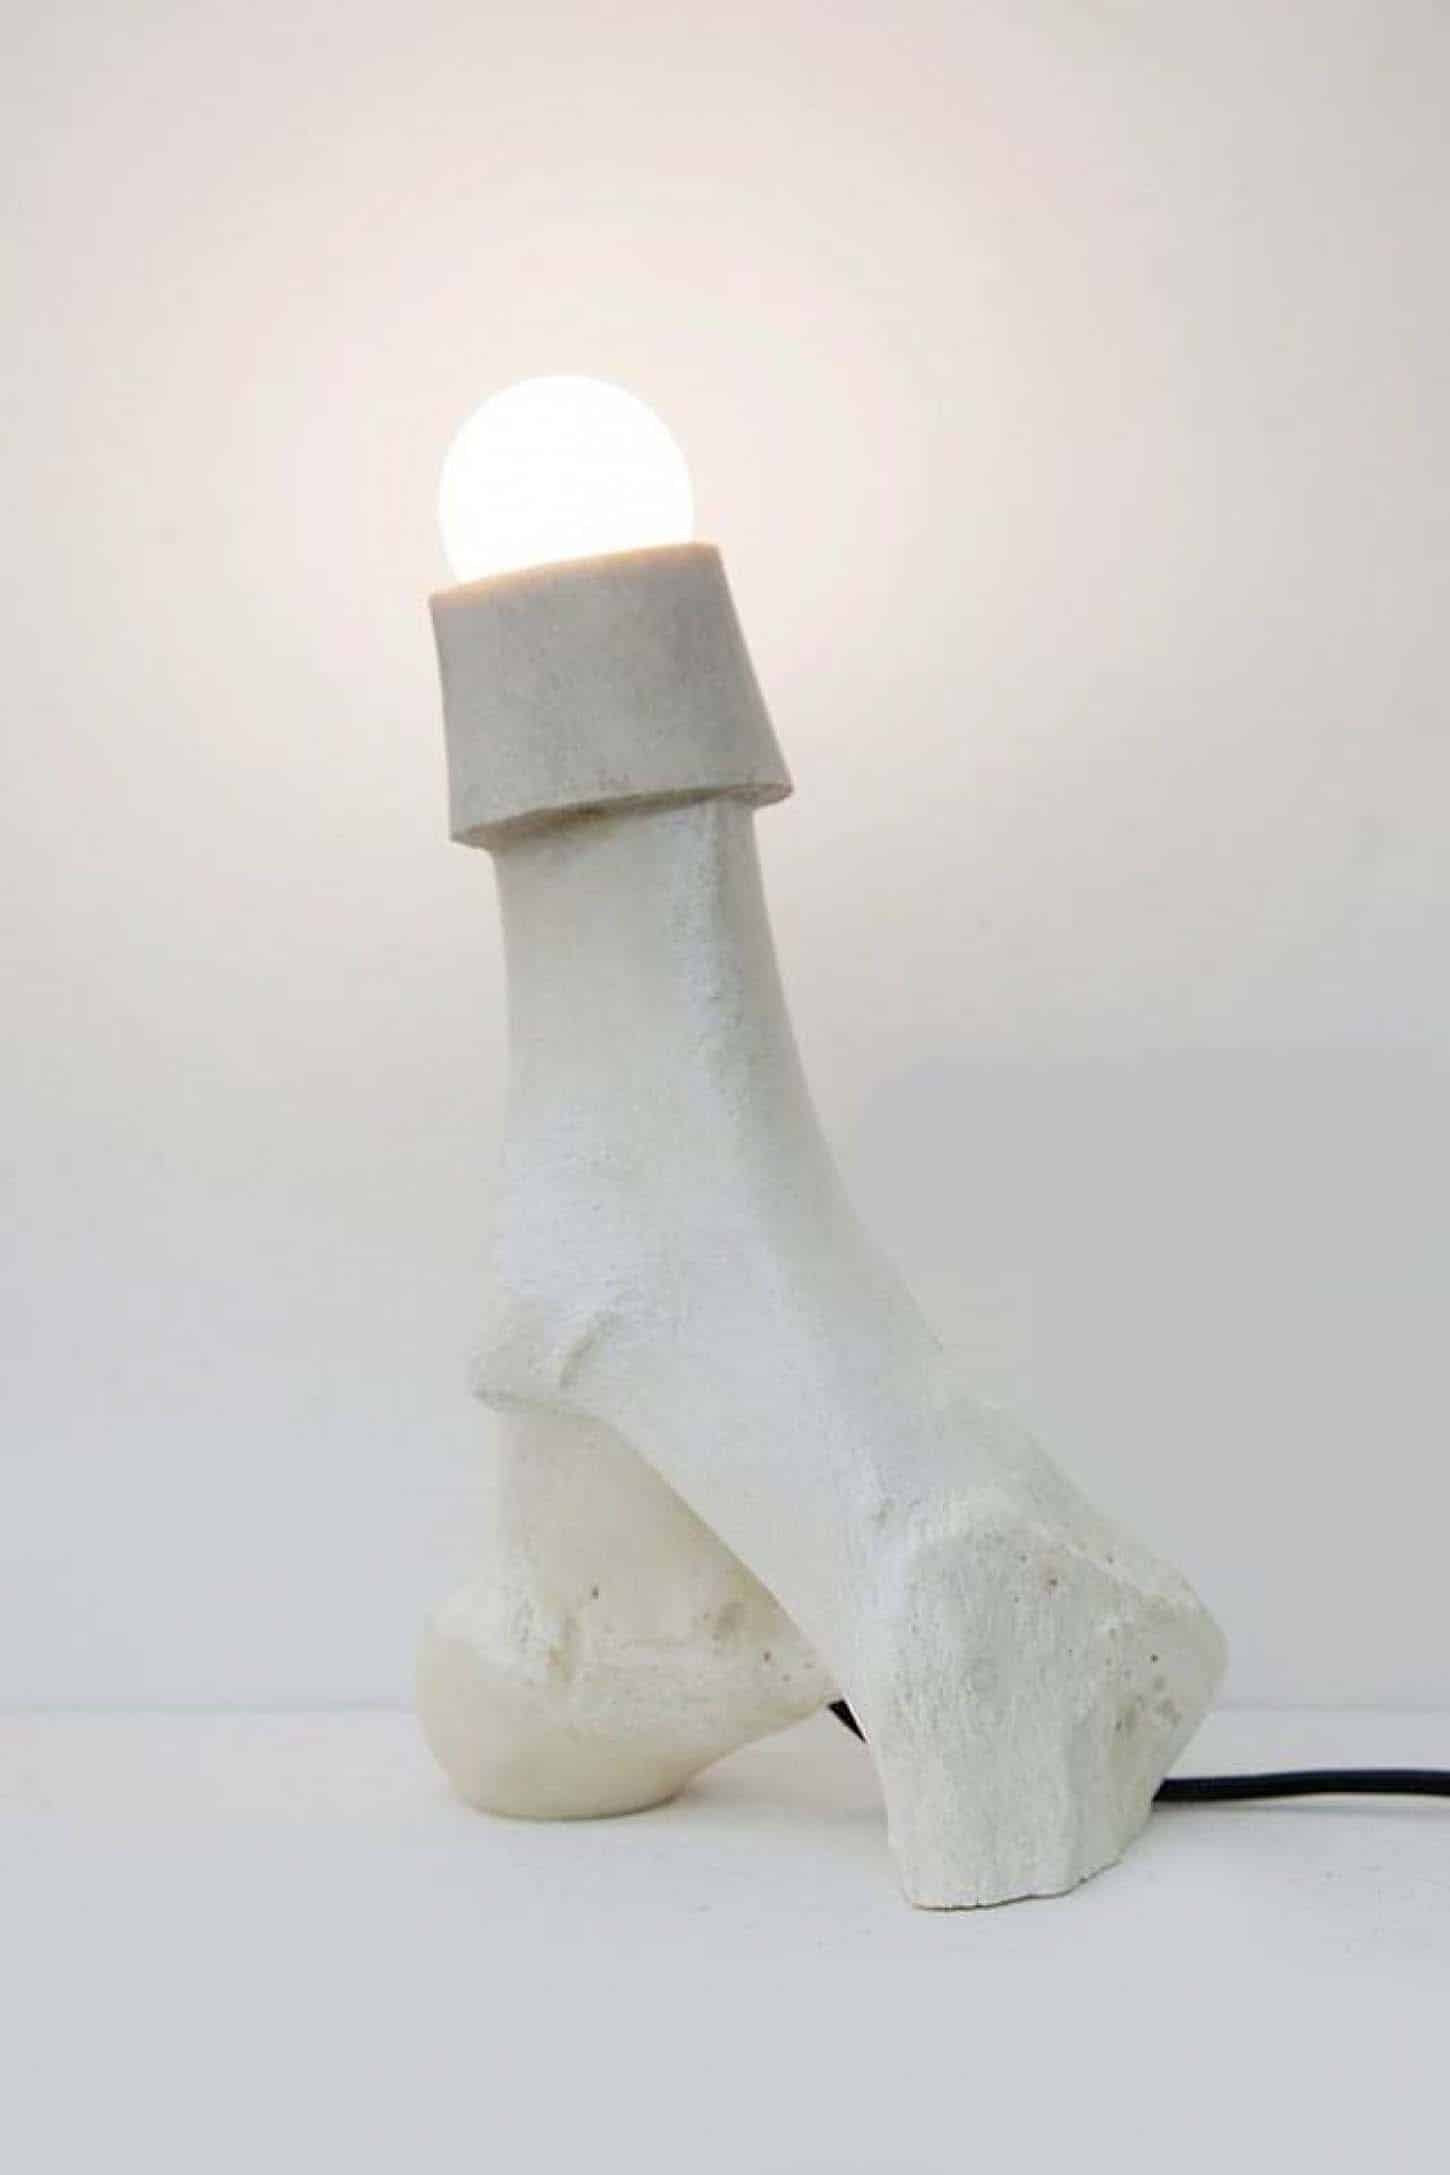 Richard Fauguet
Lampalos II, 2016
liseuse pour chien (Tekel), os, ampoule, fil électrique, 26 x 14,5 x 9 cm